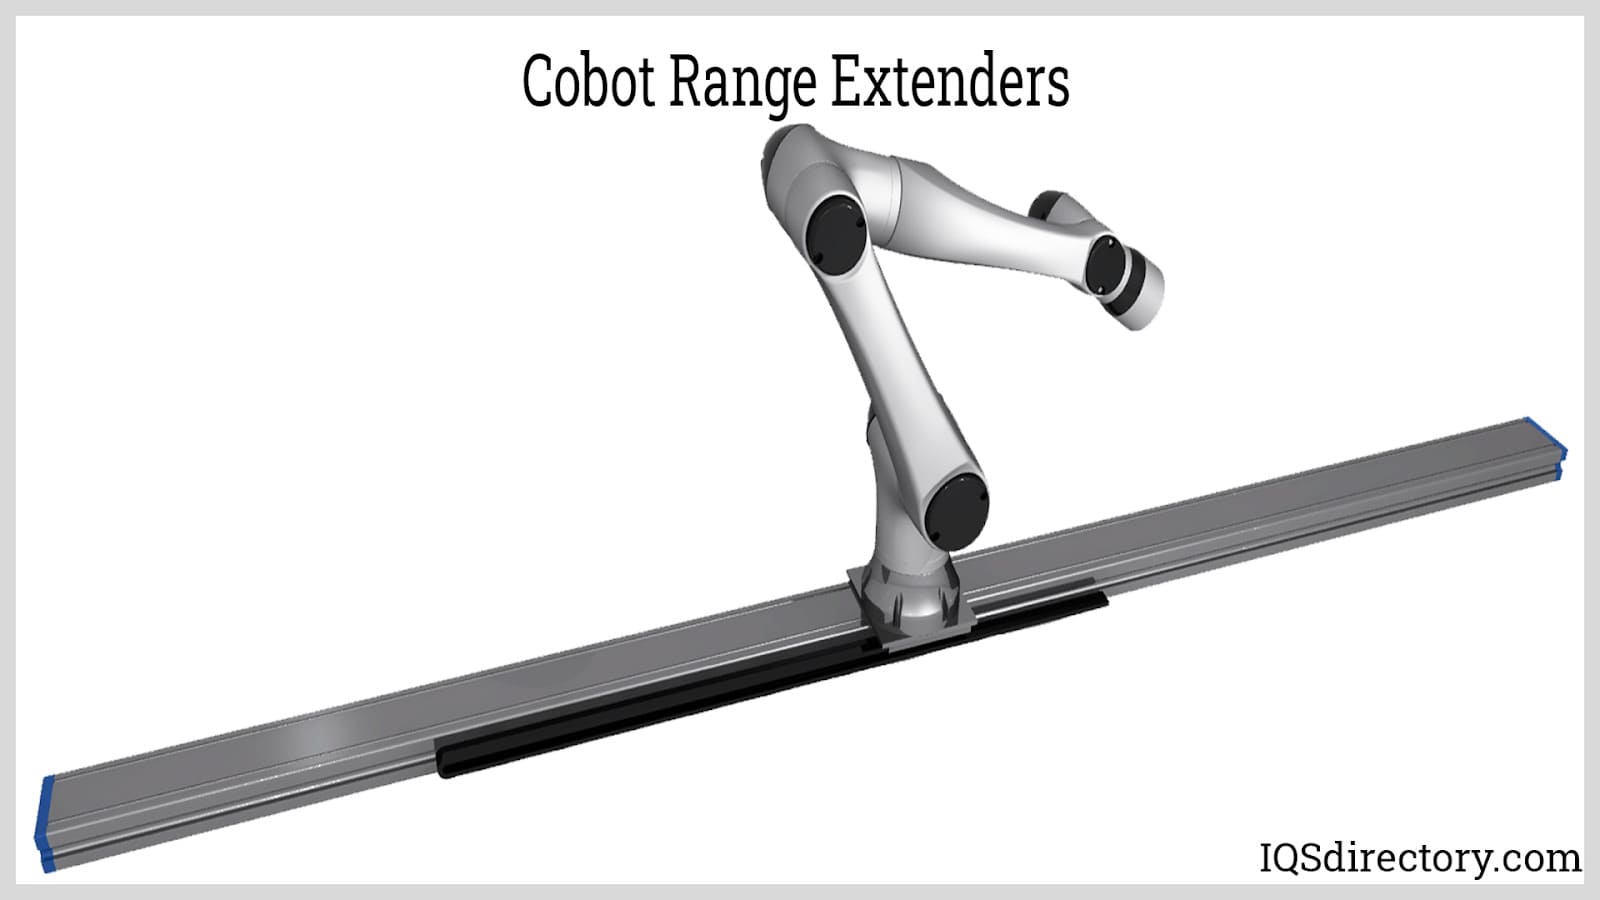 Cobot Range Extenders